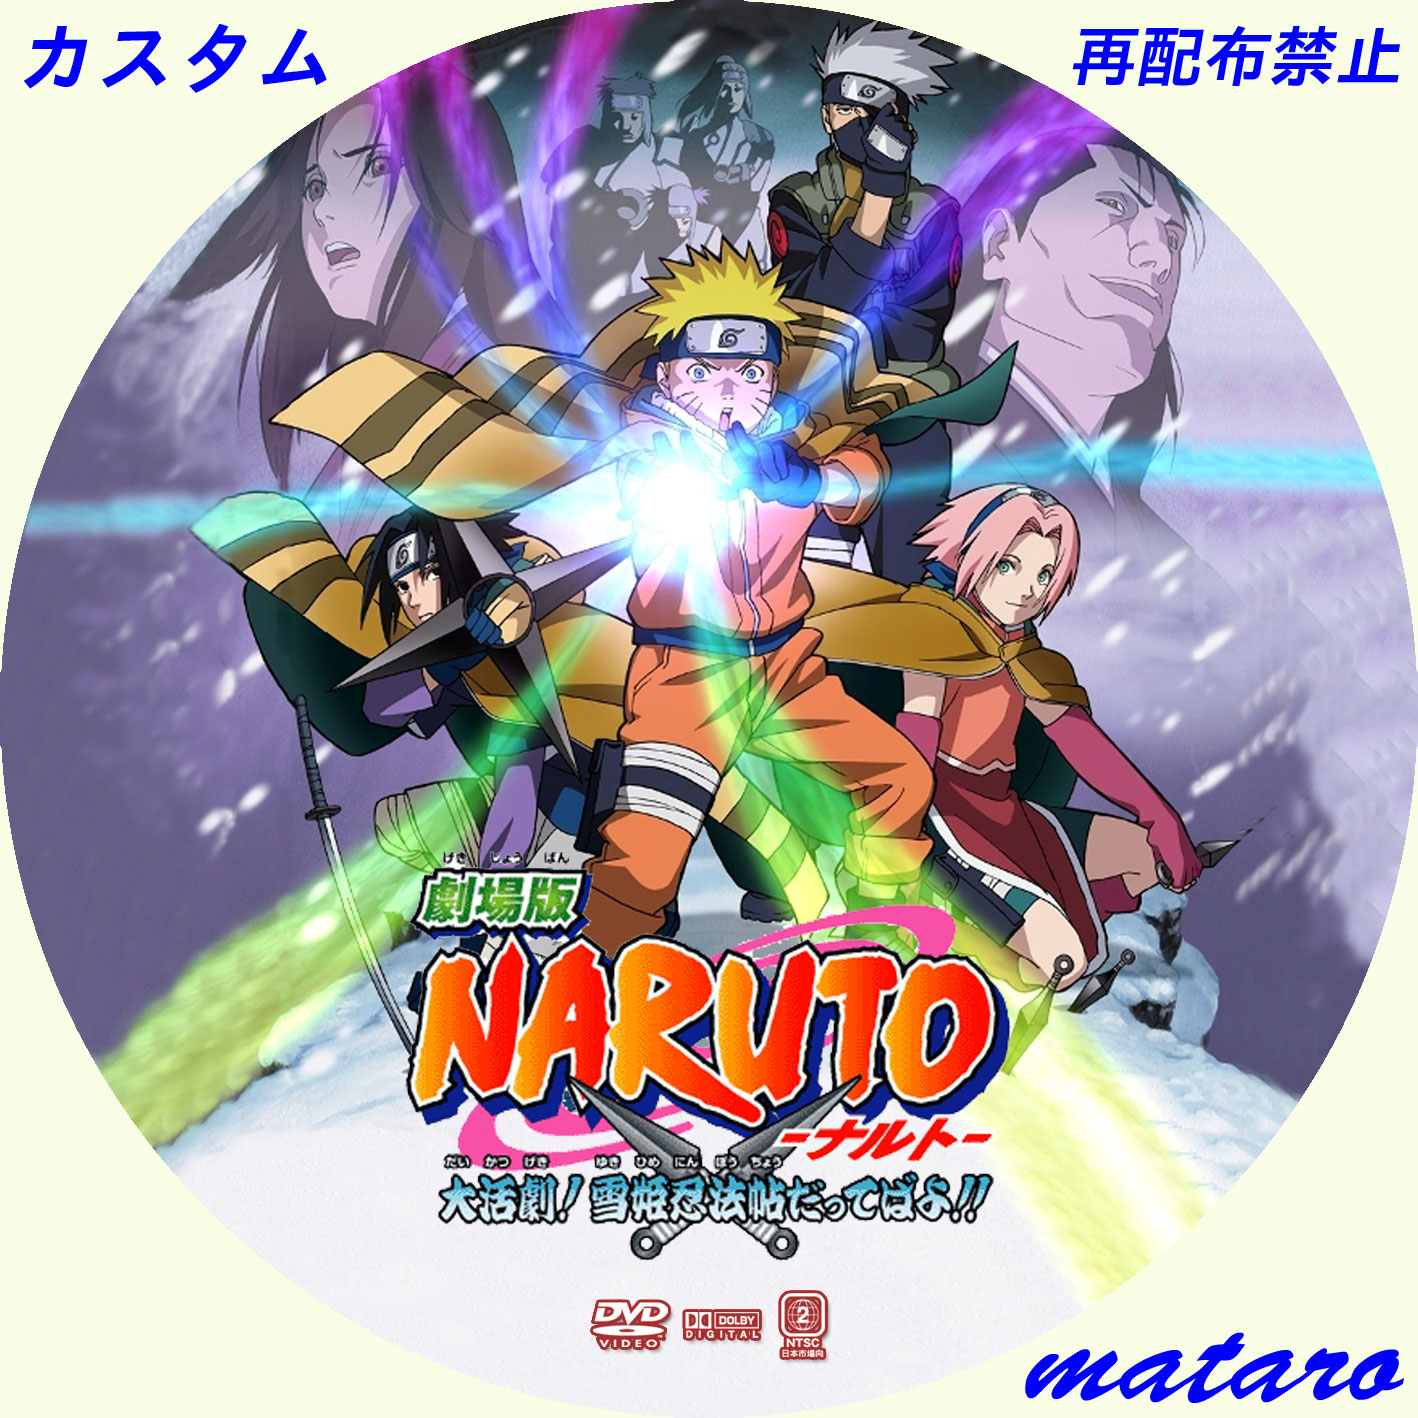 劇場版 Naruto ナルト 疾風伝 絆 完全生産限定版 アニプレックス 最安値 篠田カリモクのブログ